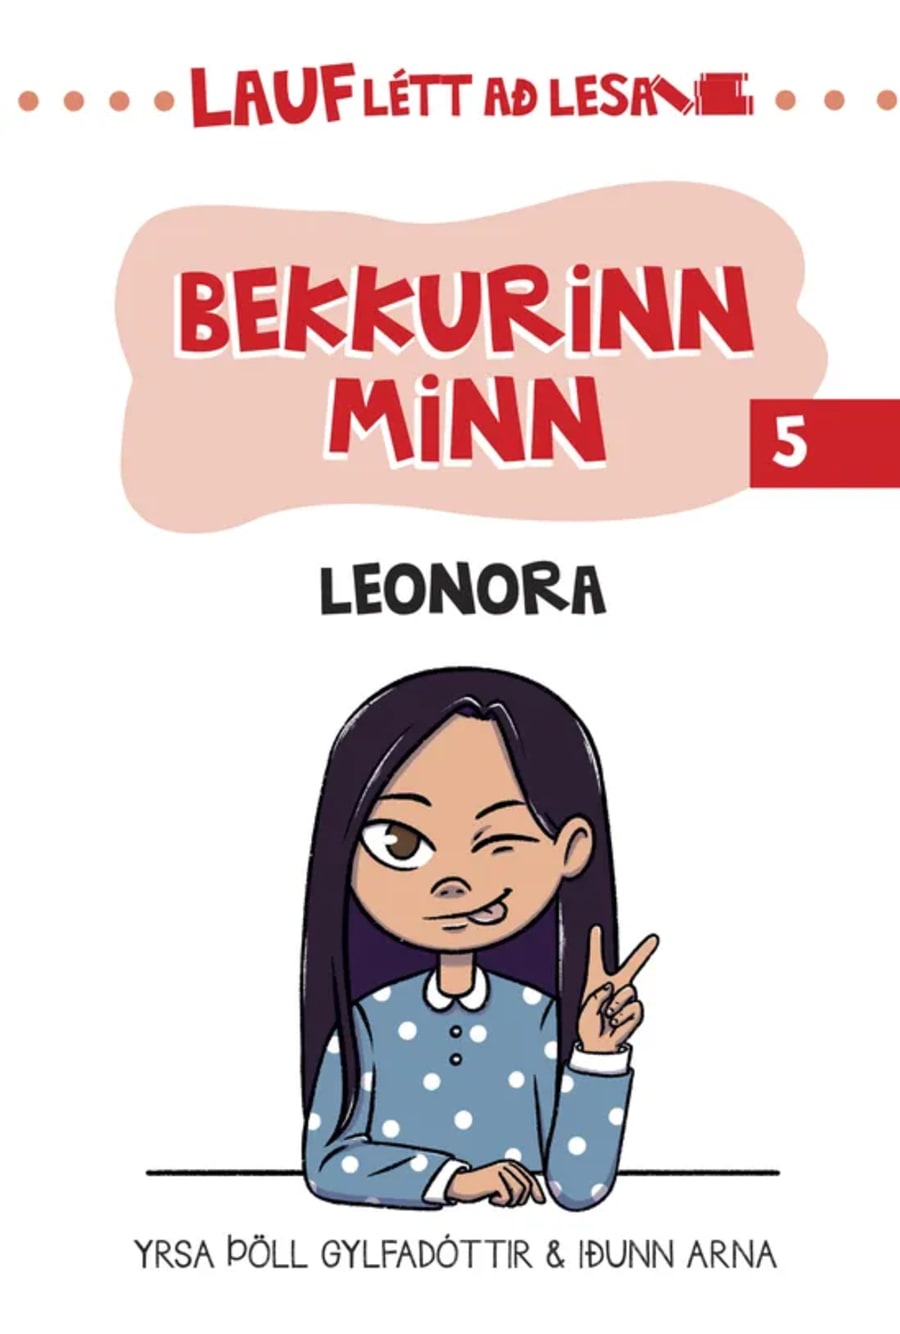 Bekkurinn minn - Lauflétt að lesa 5: Leonora